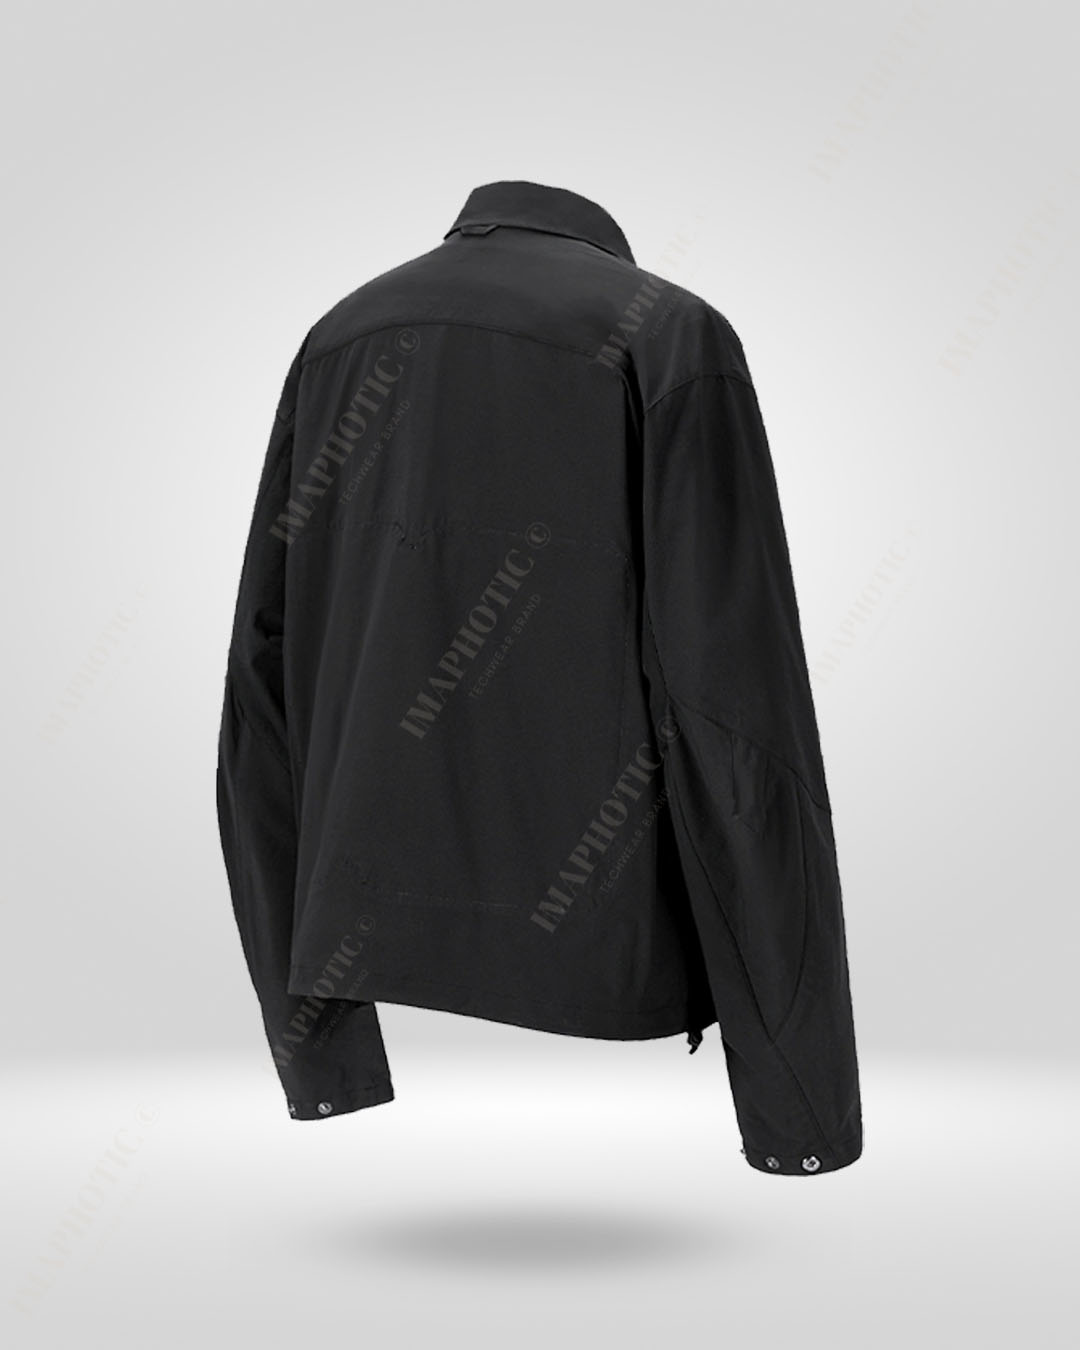 Versatile Harrington Jacket - Waterproof & Convertible Design